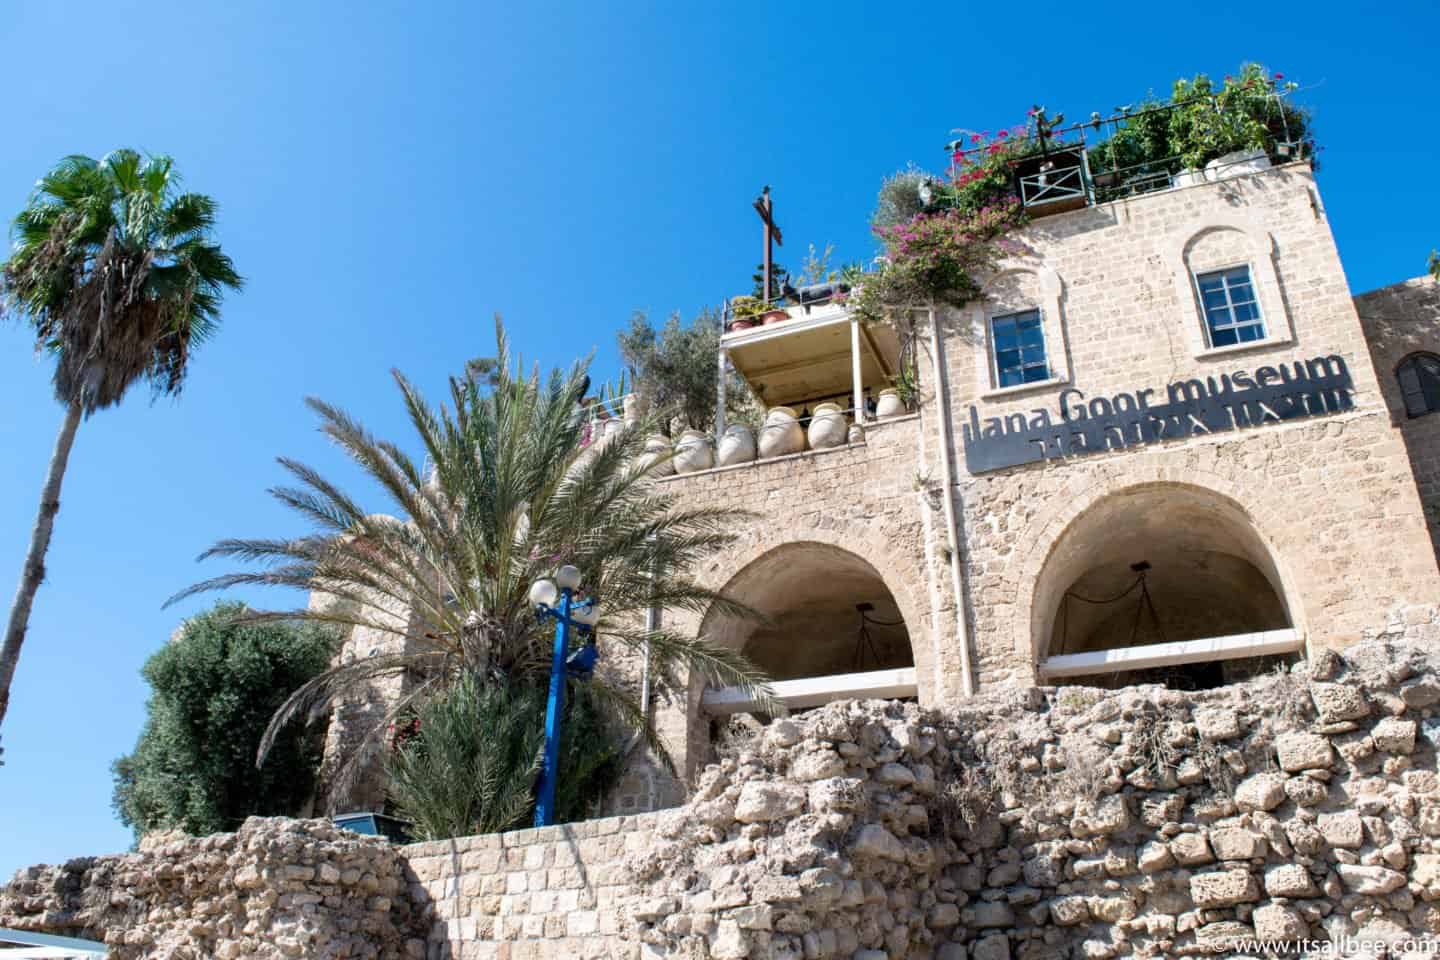 Ilana Goor Museum - Old Jaffa Port In Tel Aviv Israel